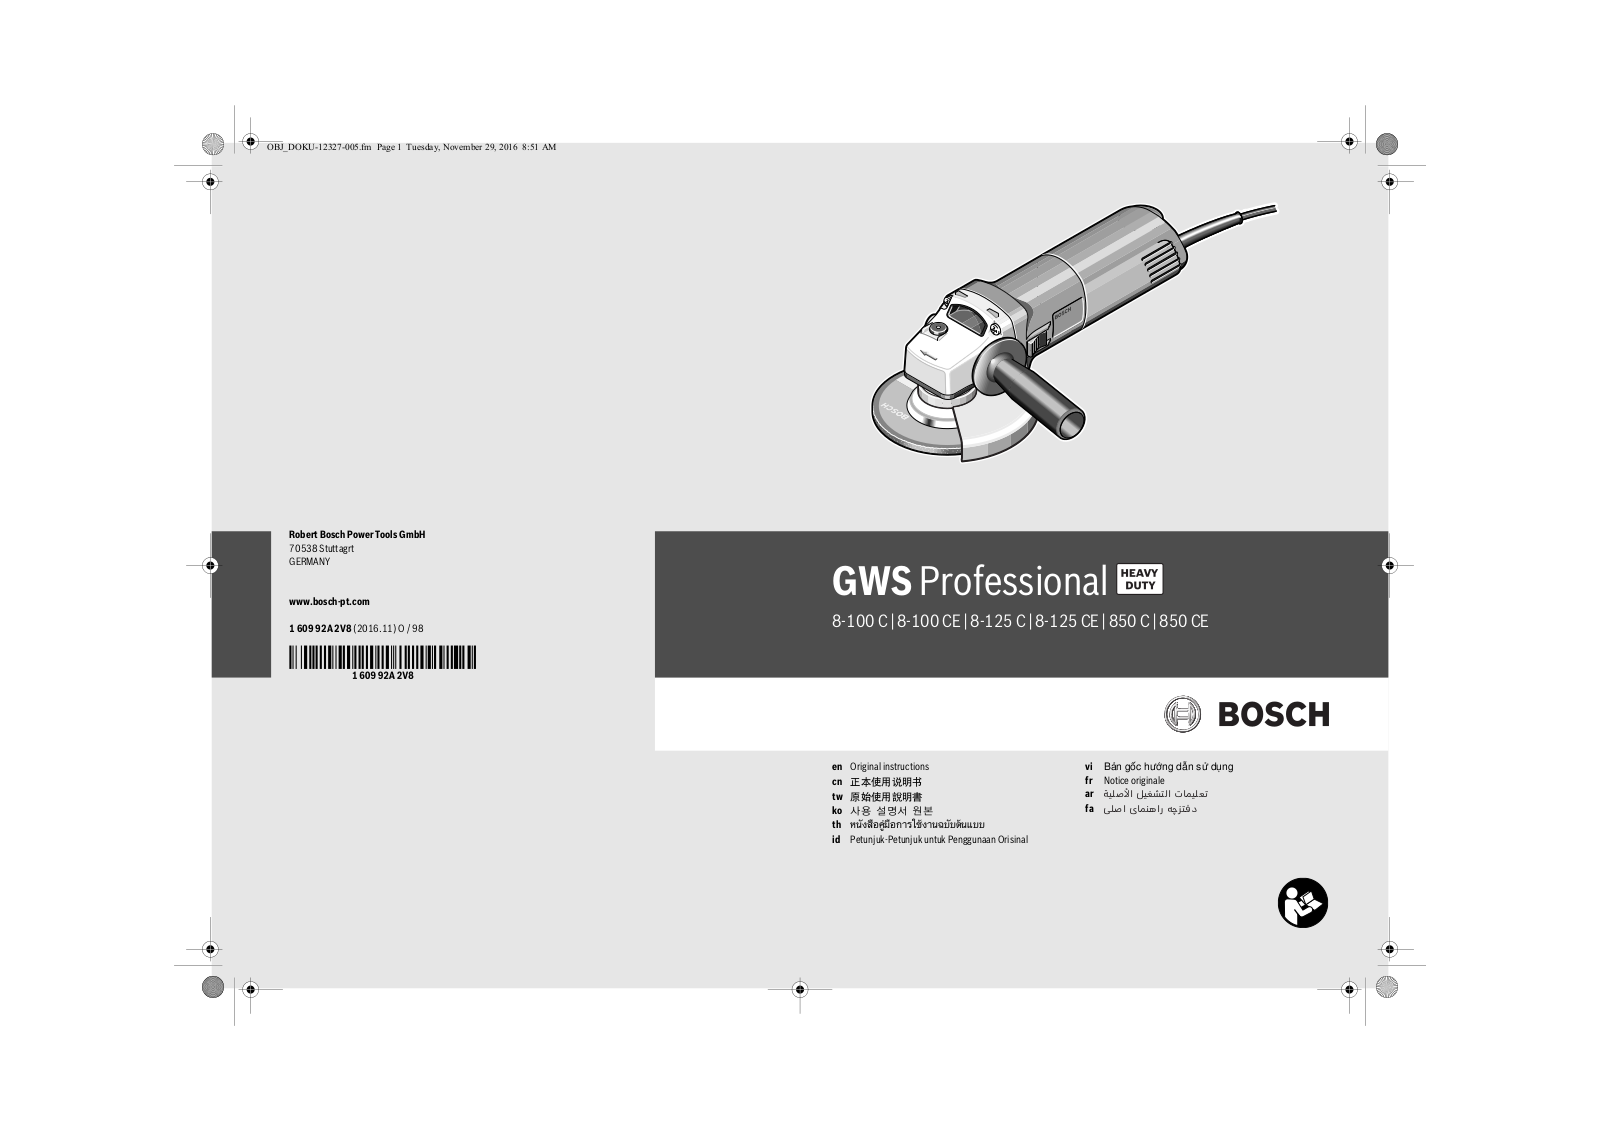 Bosch GWS 8-100 C, GWS 8-100 CE, GWS 8-125 C, GWS 8-125 CE, GWS 850 C User Manual